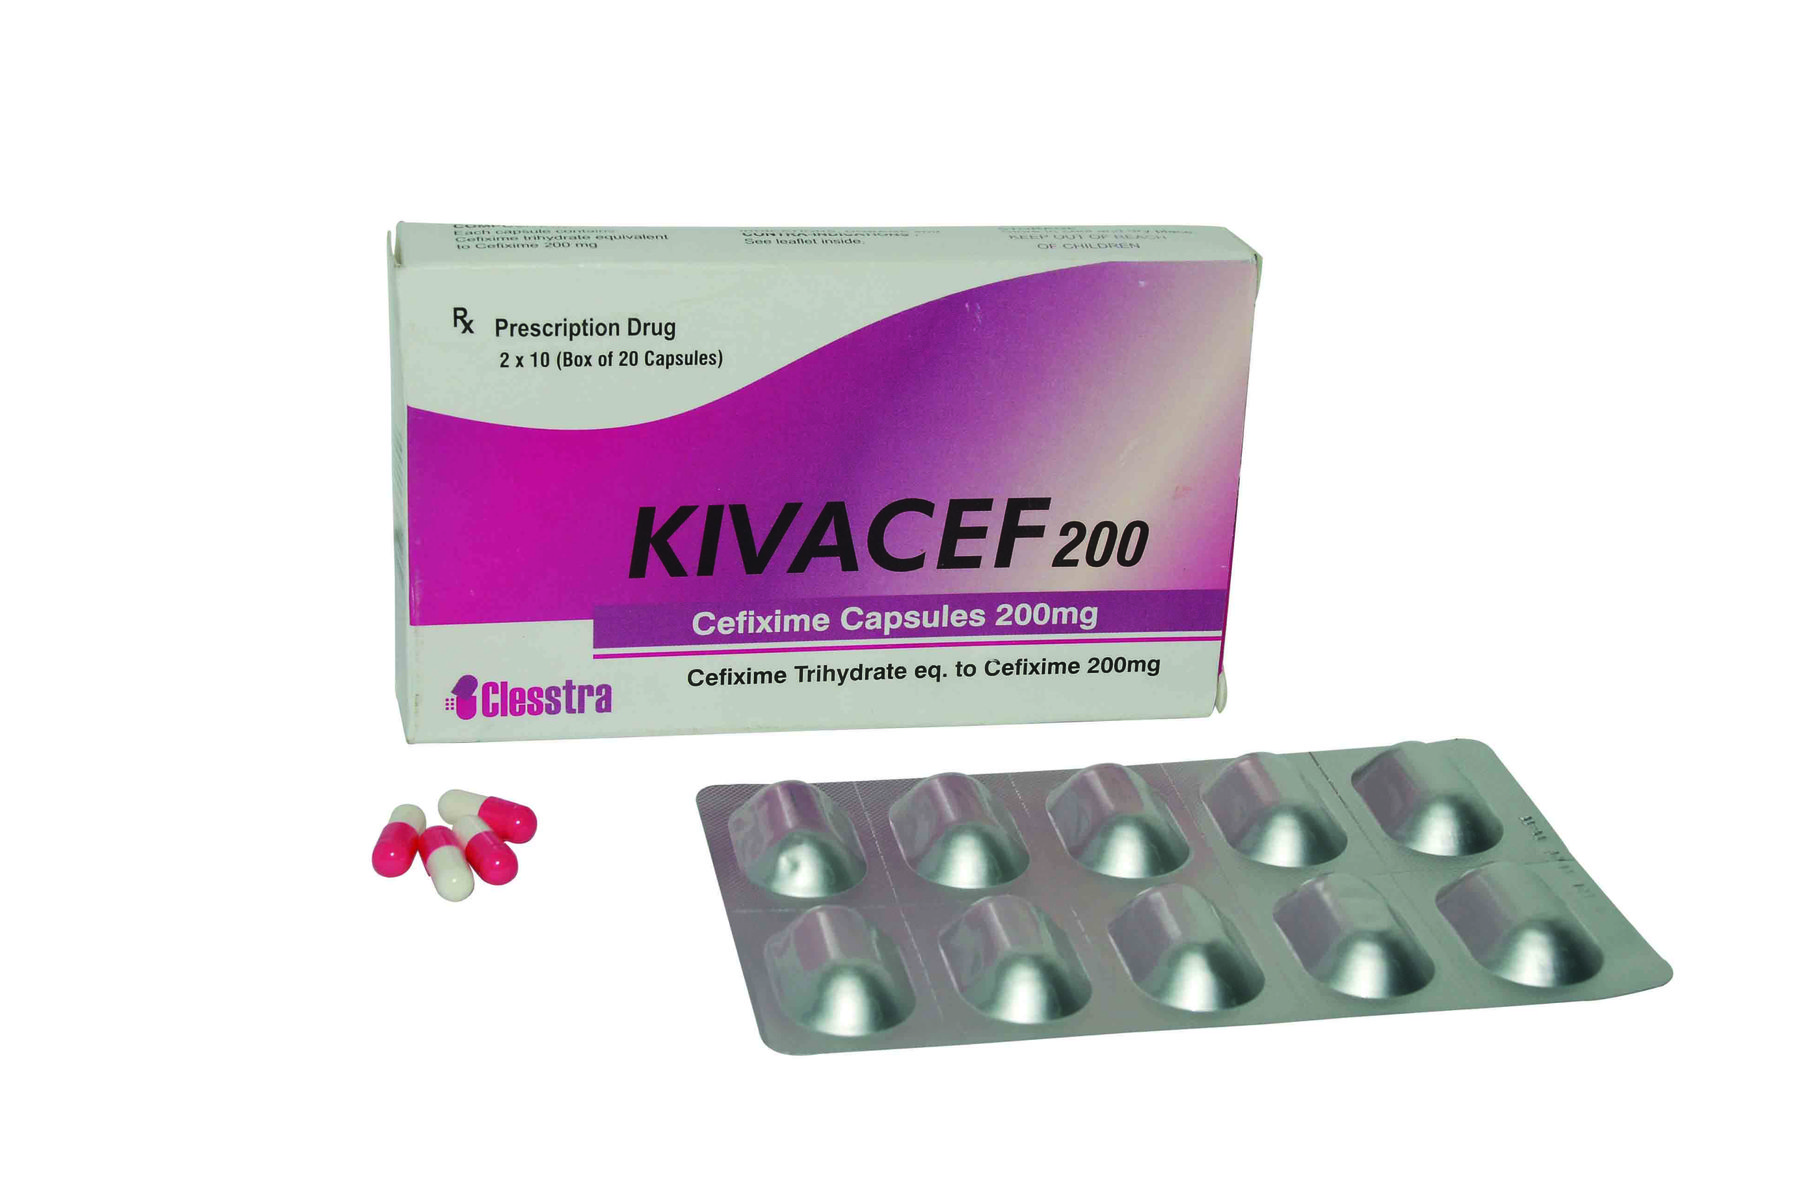 Công dụng thuốc Kivacef